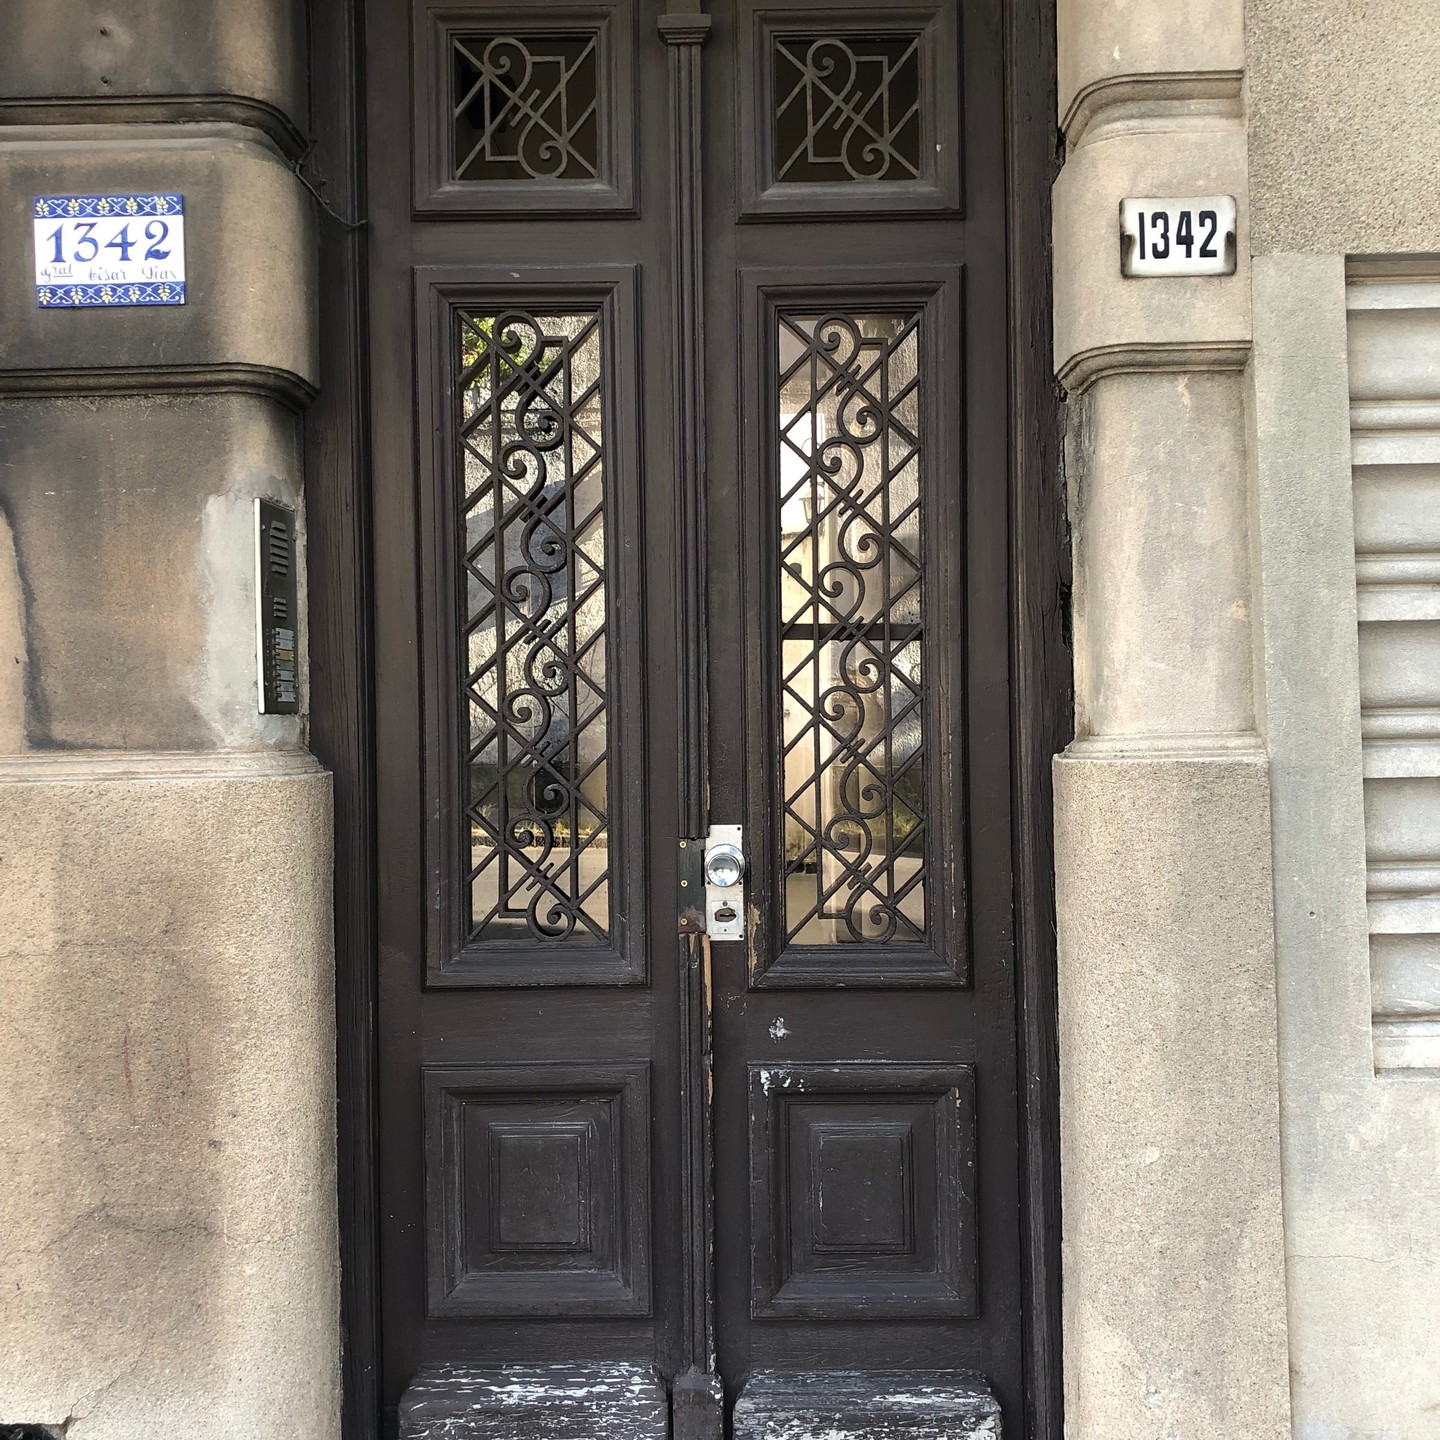 Das ich Haustüren interessant finde, wissen wahrscheinlich die wenigsten von euch. Deswegen heute mal ein paar Haustüren aus Montevideo für euch. #montevideo #uruguay #haustüren #doors #reisen #travel #unterwegs